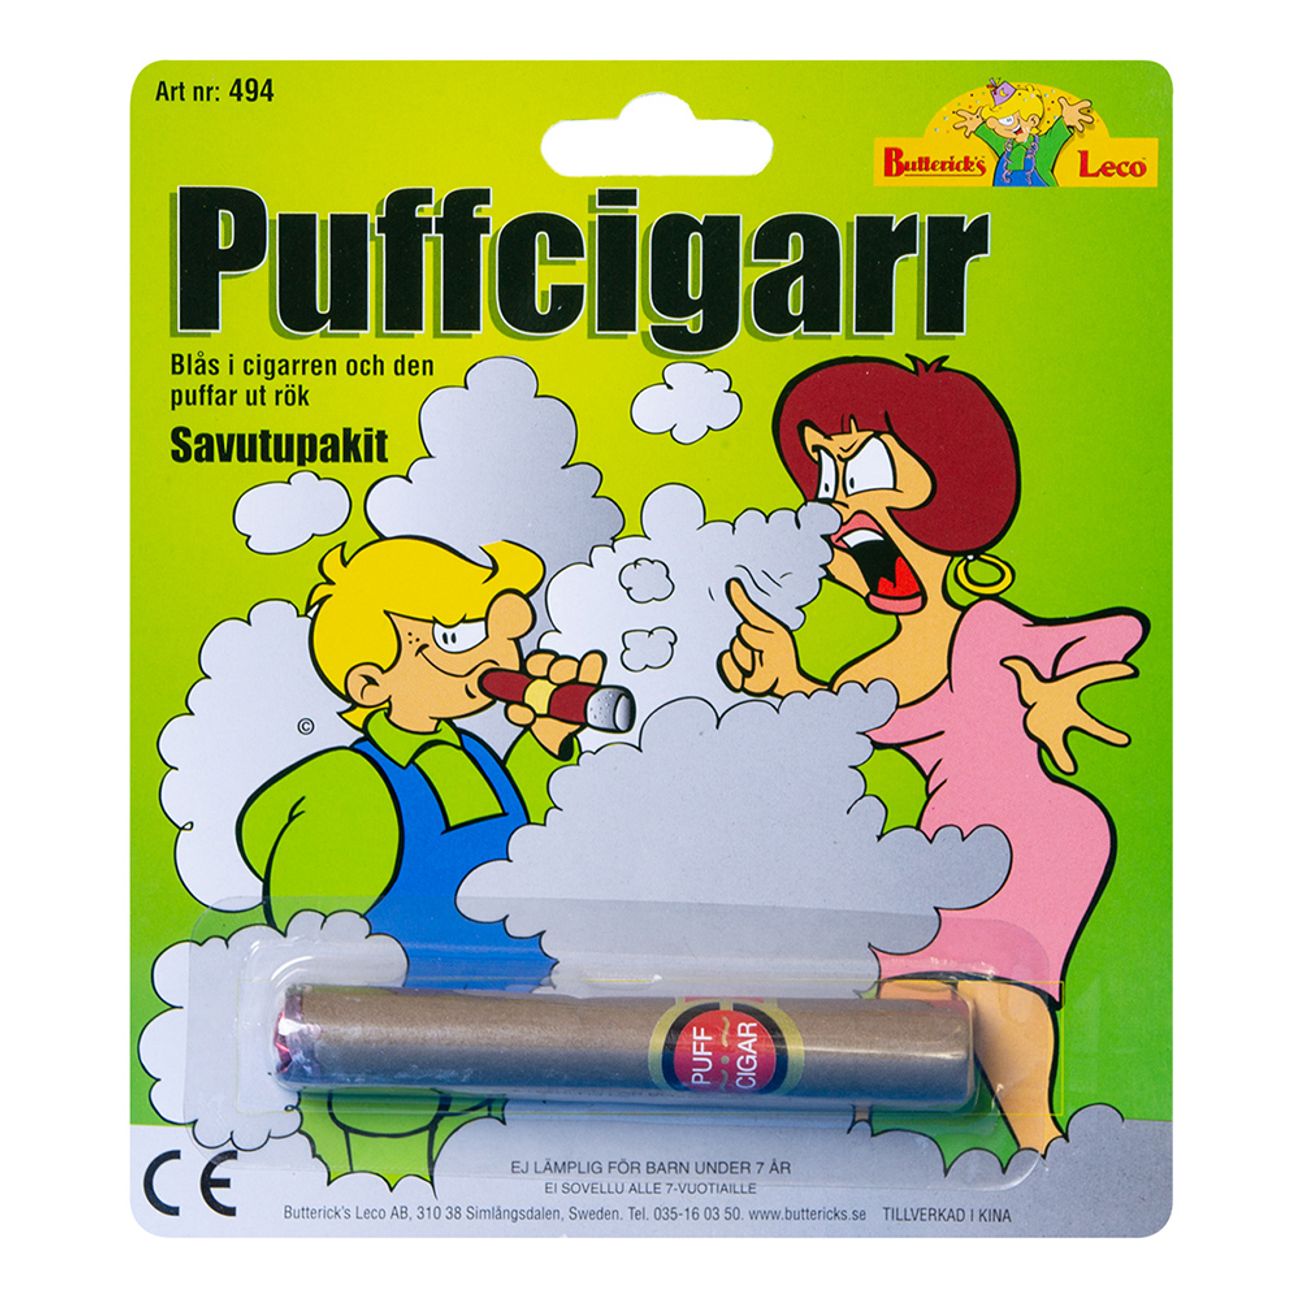 puffcigarr-2